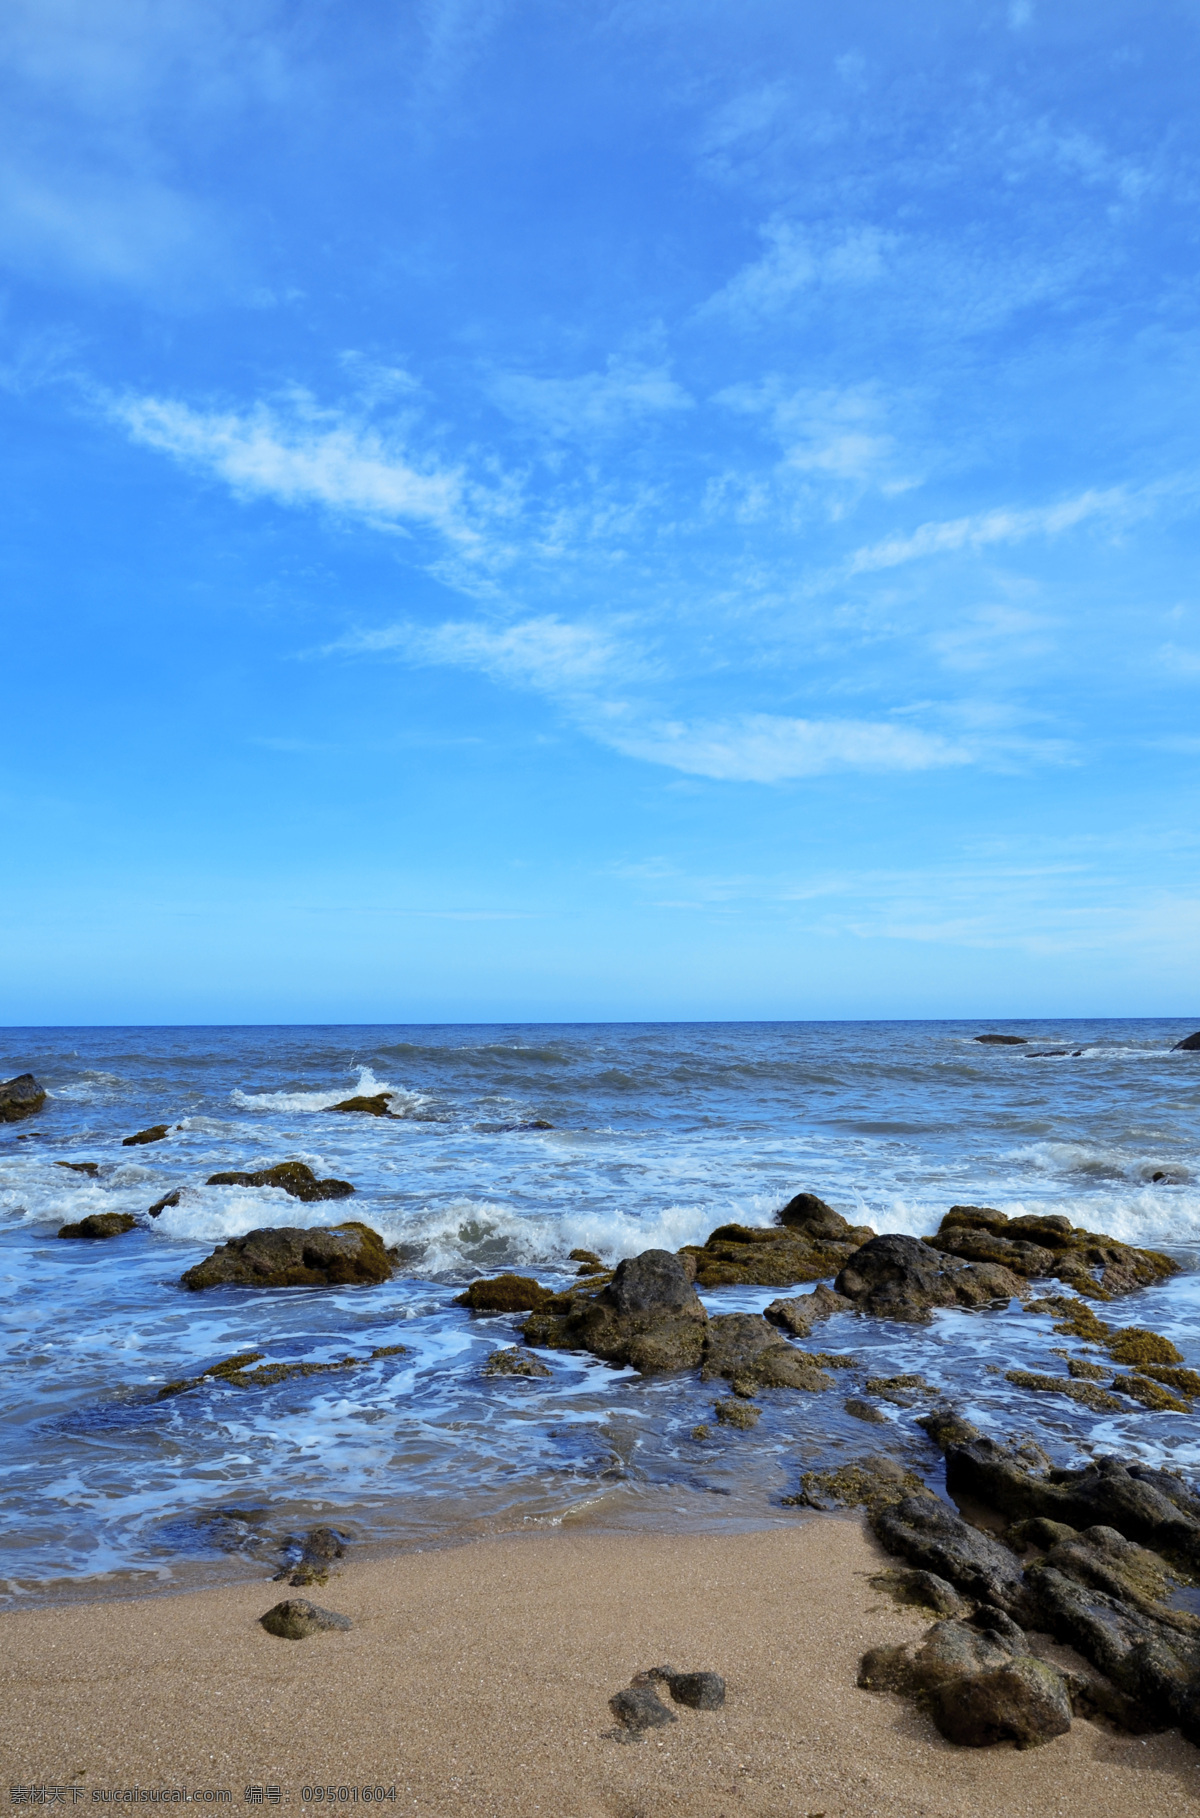 海边风光 海边 沙滩 礁石 大海 蓝天 风景类 自然风景 自然景观